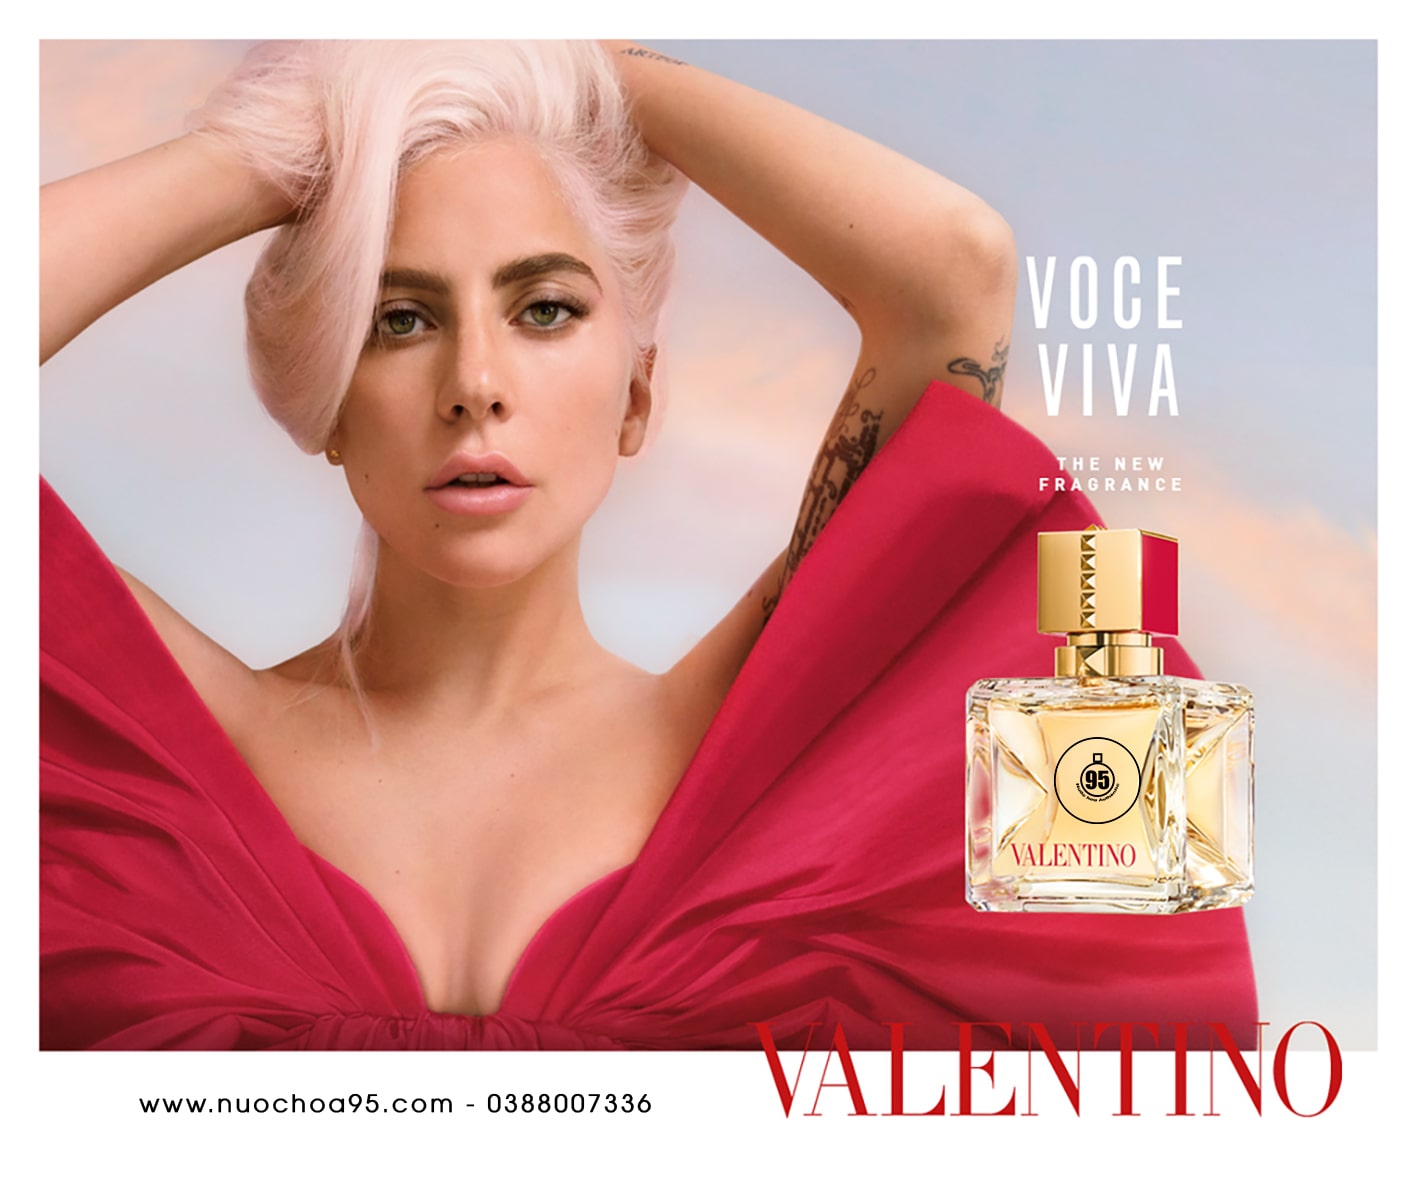 Nước hoa Valentino Voce Viva - Ảnh 1